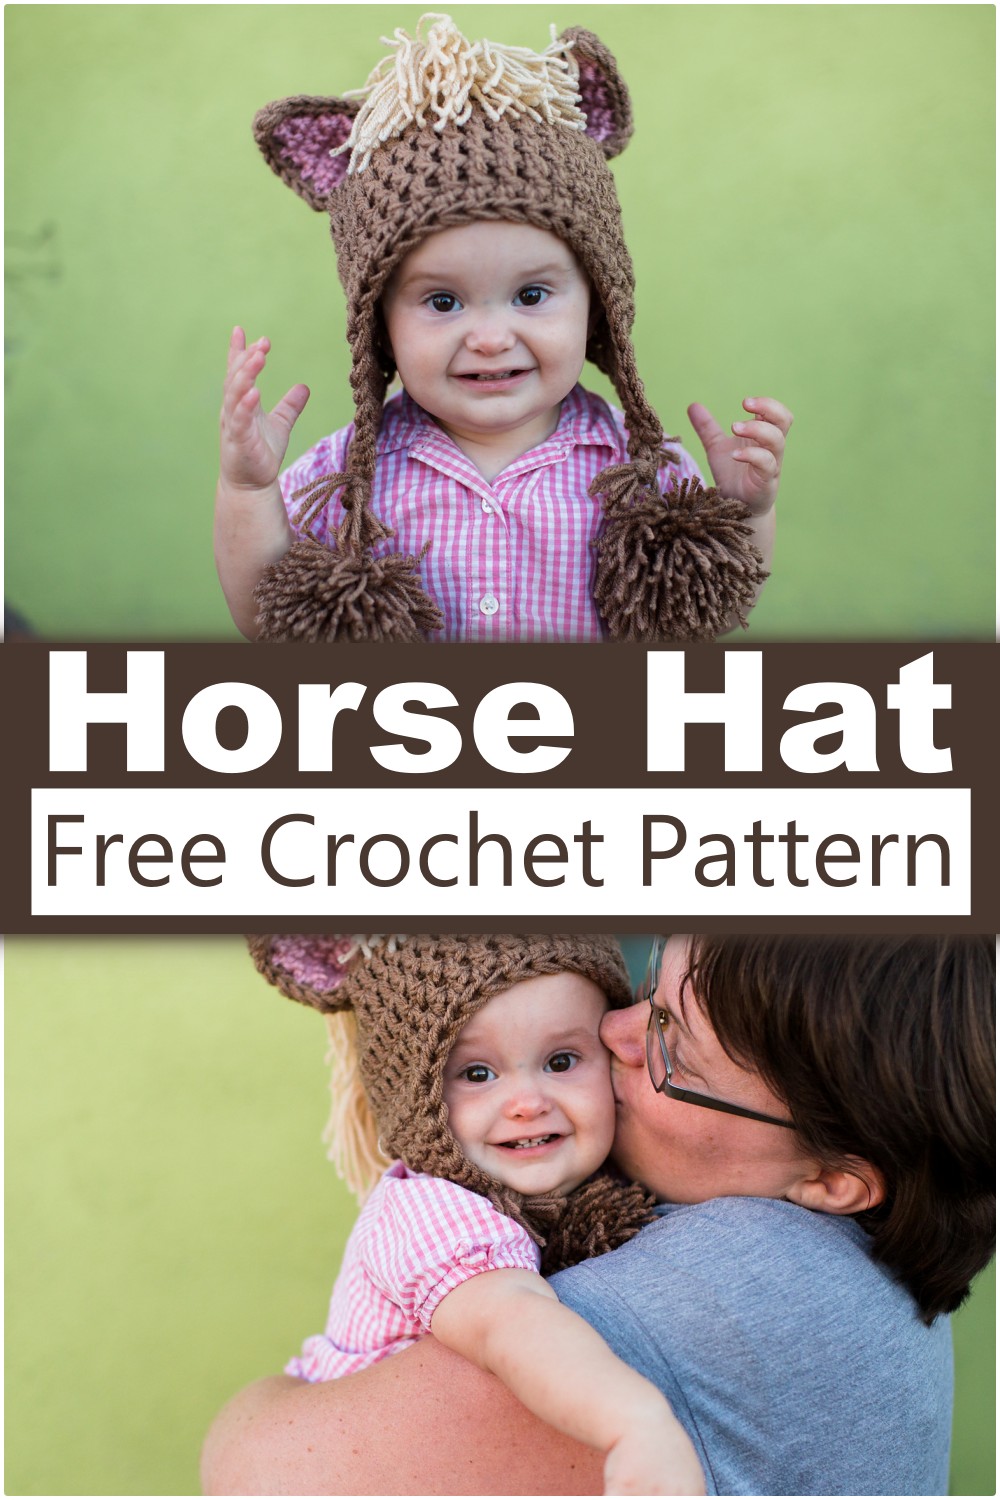 Crochet Horse Hat Free Pattern